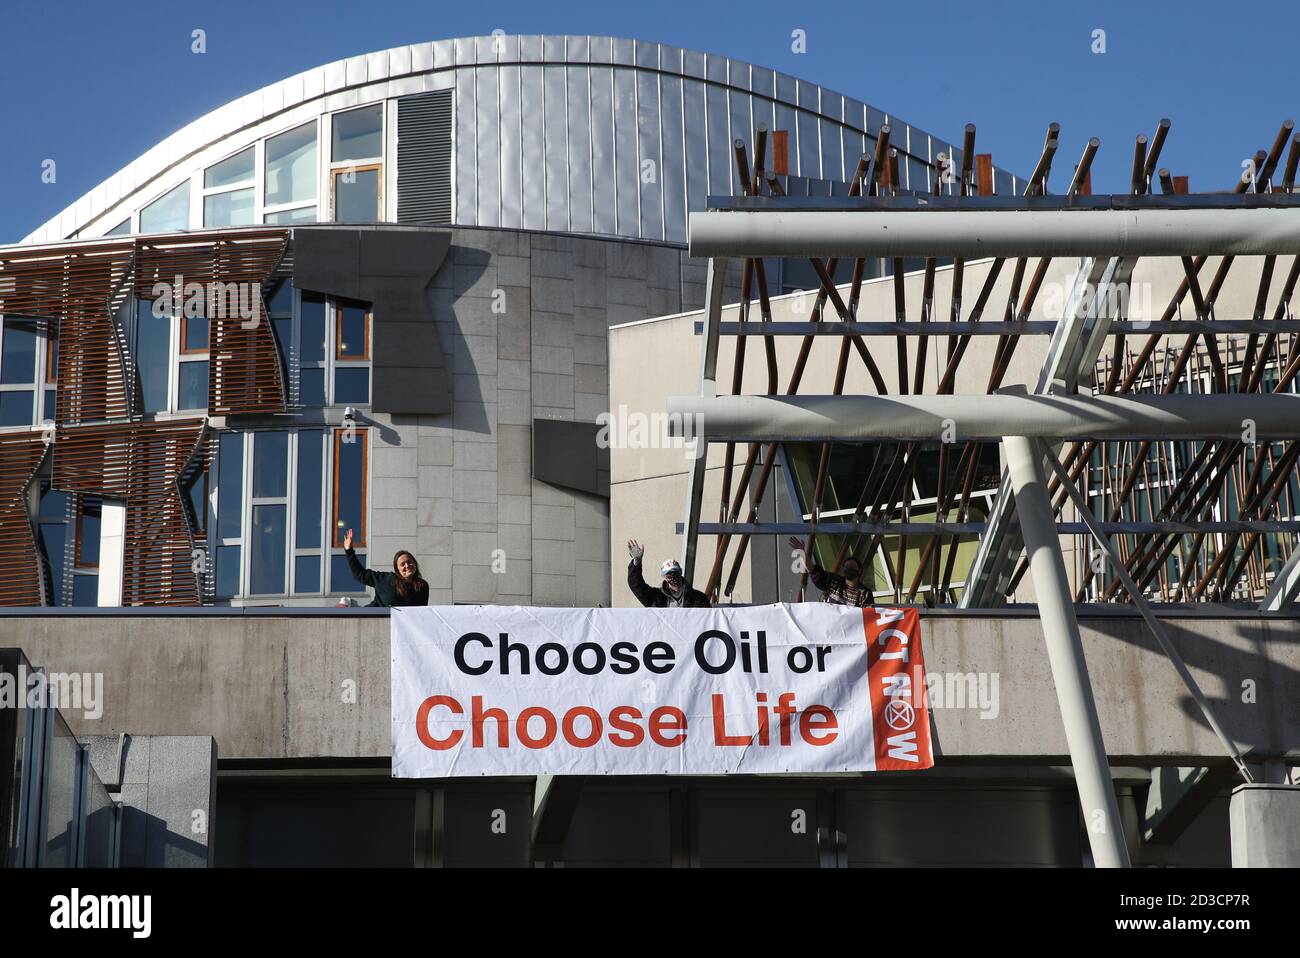 Tre membri della Extinction Rebellion Scotland che sono saliti a Holyrood, il Parlamento scozzese di Edimburgo, e hanno bevuto un cartello con la scritta "Choose Oil or Choose Life" da una sporgenza sopra l'ingresso pubblico in una protesta contro i combustibili fossili. Foto Stock